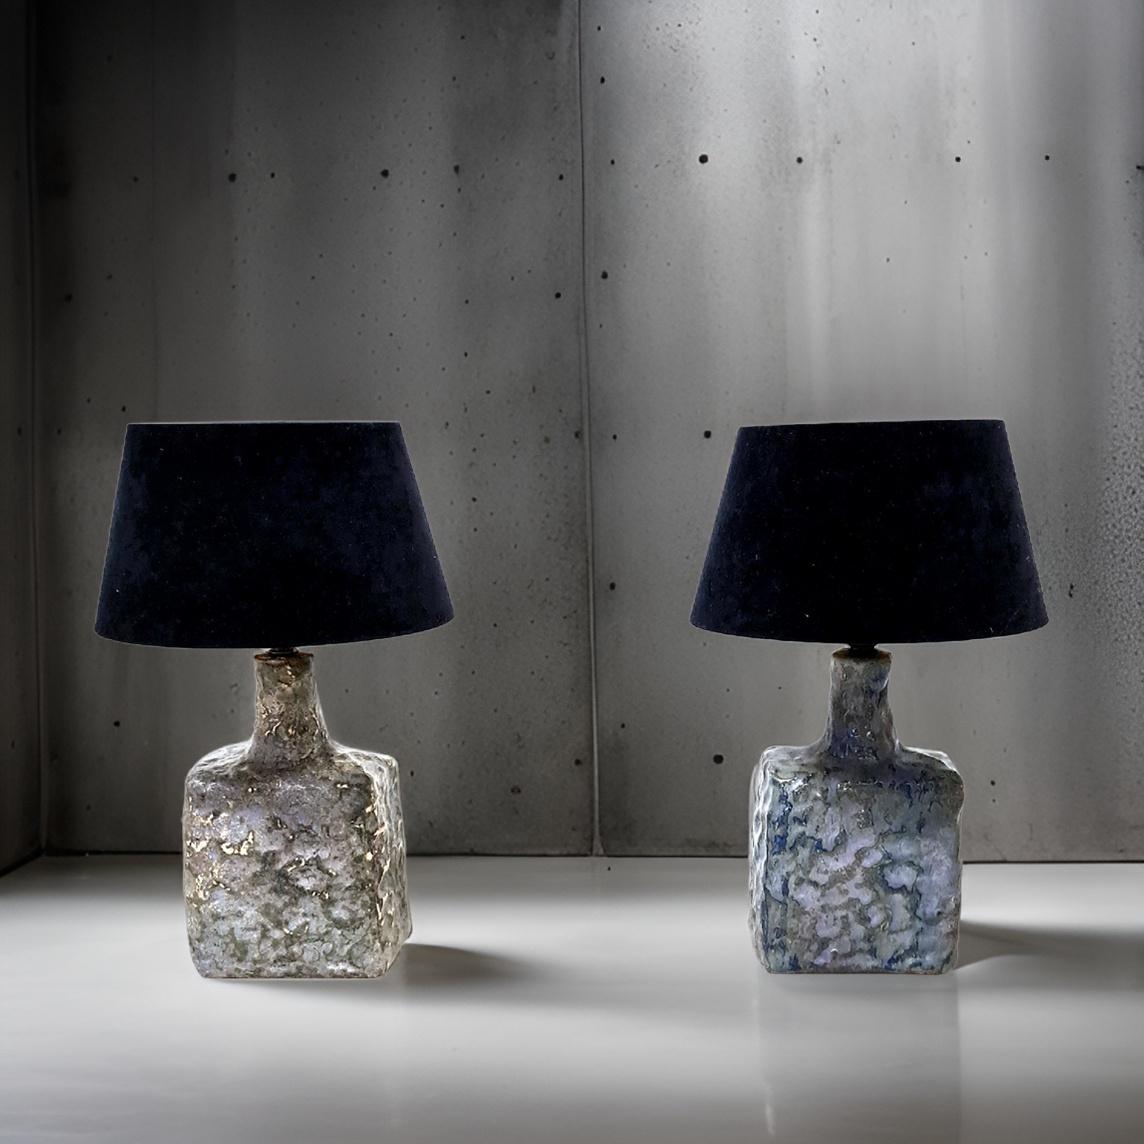 Satz von 2 Keramik-Tischlampen. Wahrscheinlich von Piet Knapper entworfen und vom Keramikstudio Mobach hergestellt. Die Lampen sind aus Keramik gefertigt und bläulich-grau glasiert. Die Textur der Lampen sorgt für tolle Schattierungen. Die Lampen